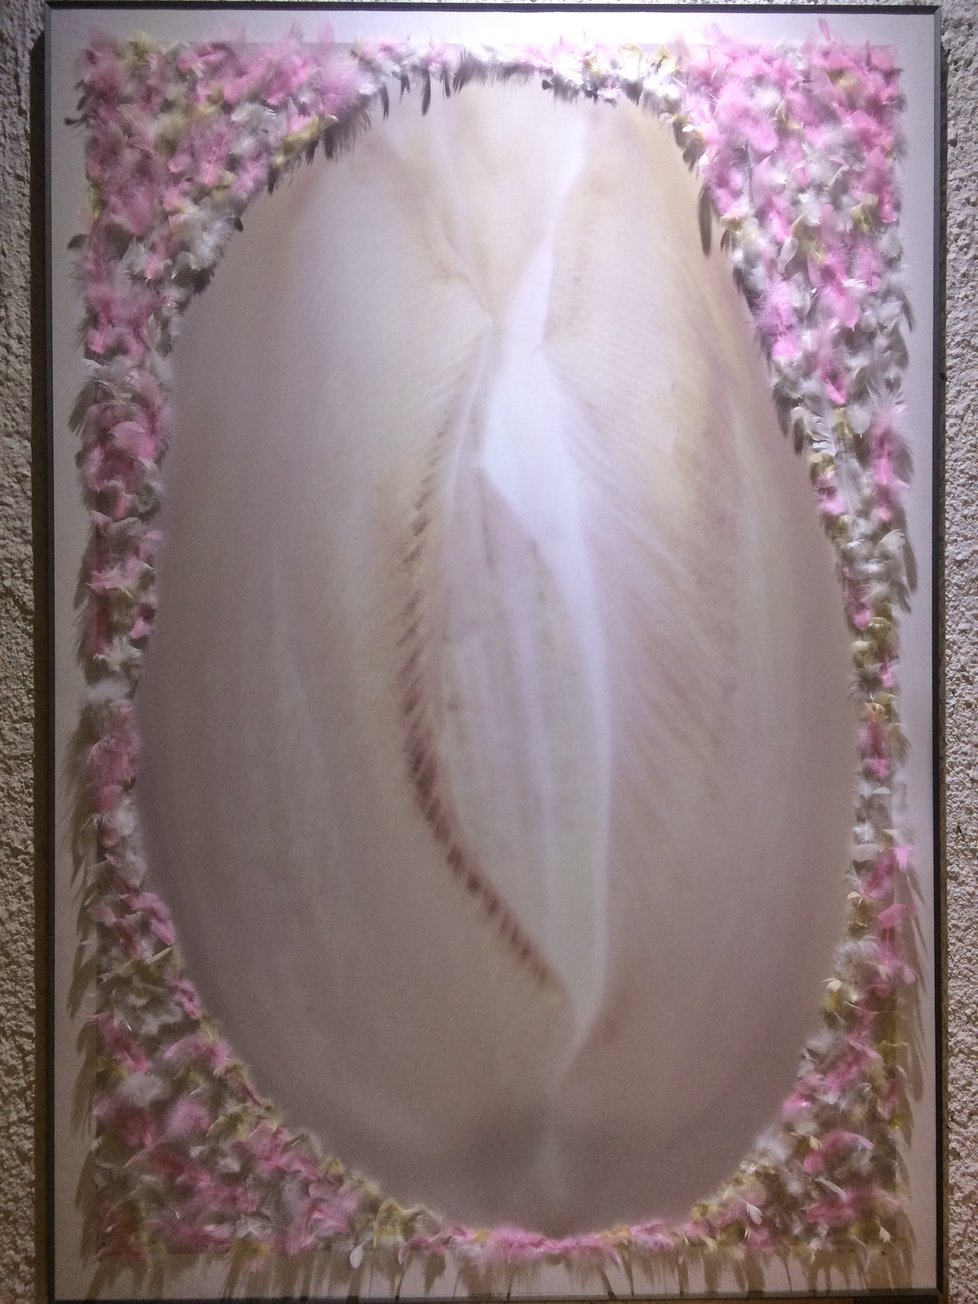 Jedno z nejzajímavějších děl celé výstavy vychází z Erotické série tulipánů. Jeden z nich vypadá na první pohled jako vagína. Jeho dráždivé vyznění dokreslují nalepená peříčka podél okrajů.